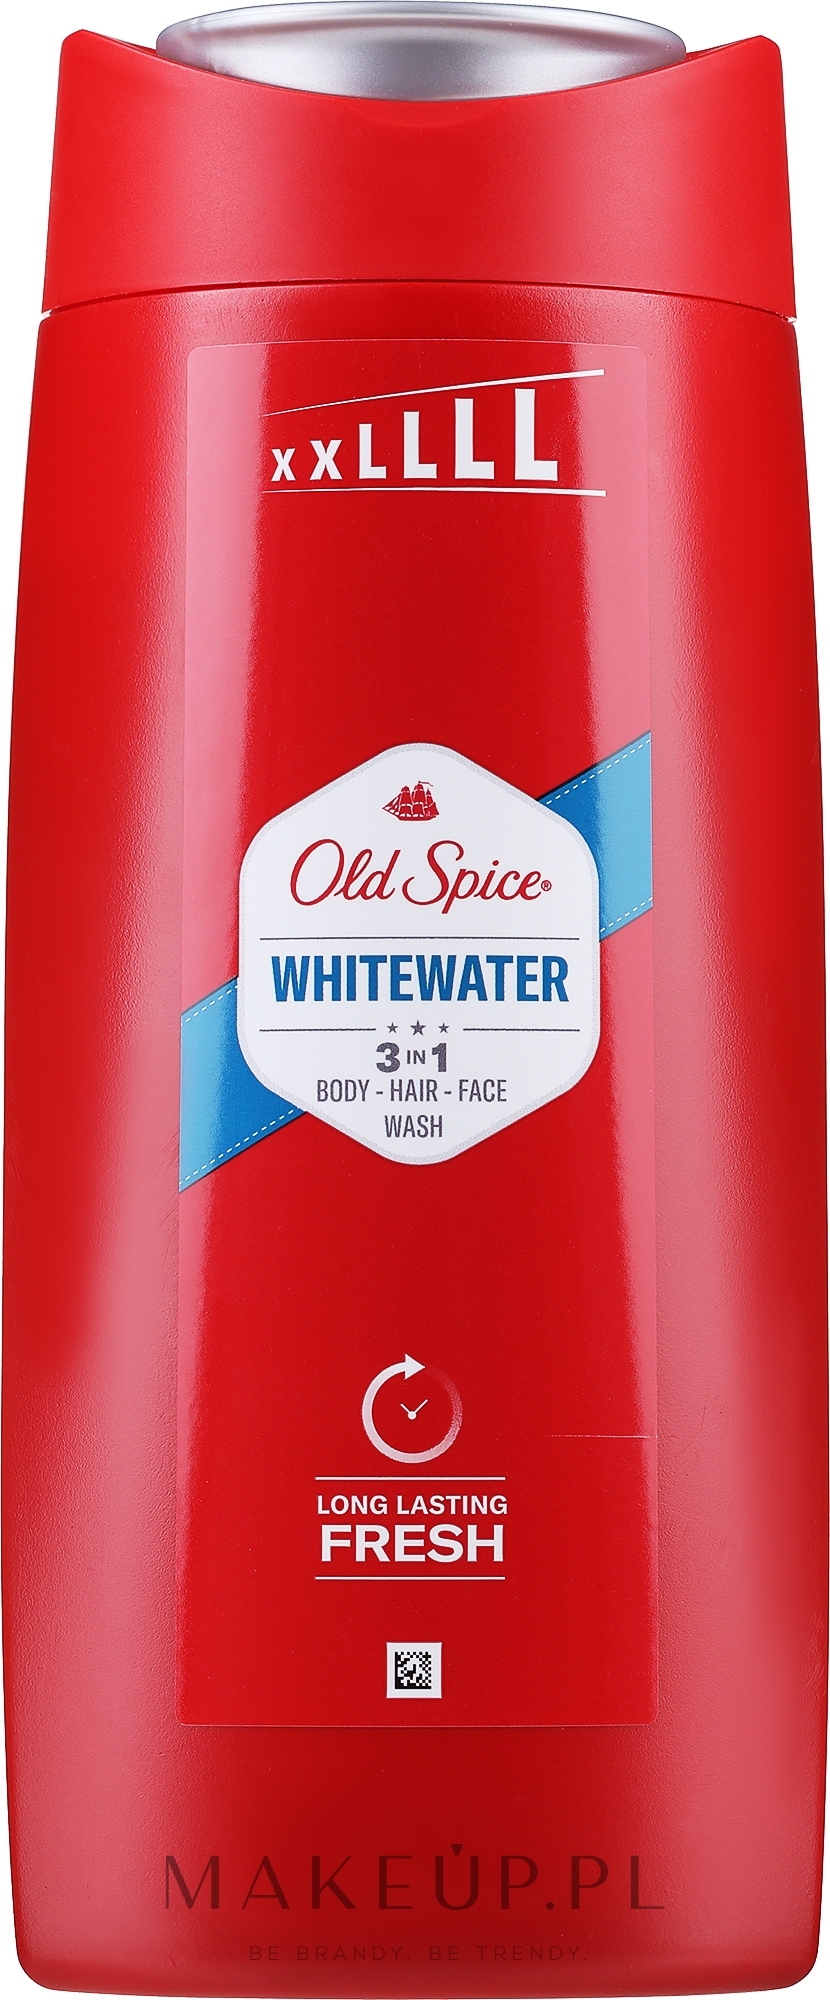 Old Spice Whitewater Shower Gel Shampoo 3 In 1 Szampon żel Pod Prysznic 3 W 1 Makeuppl